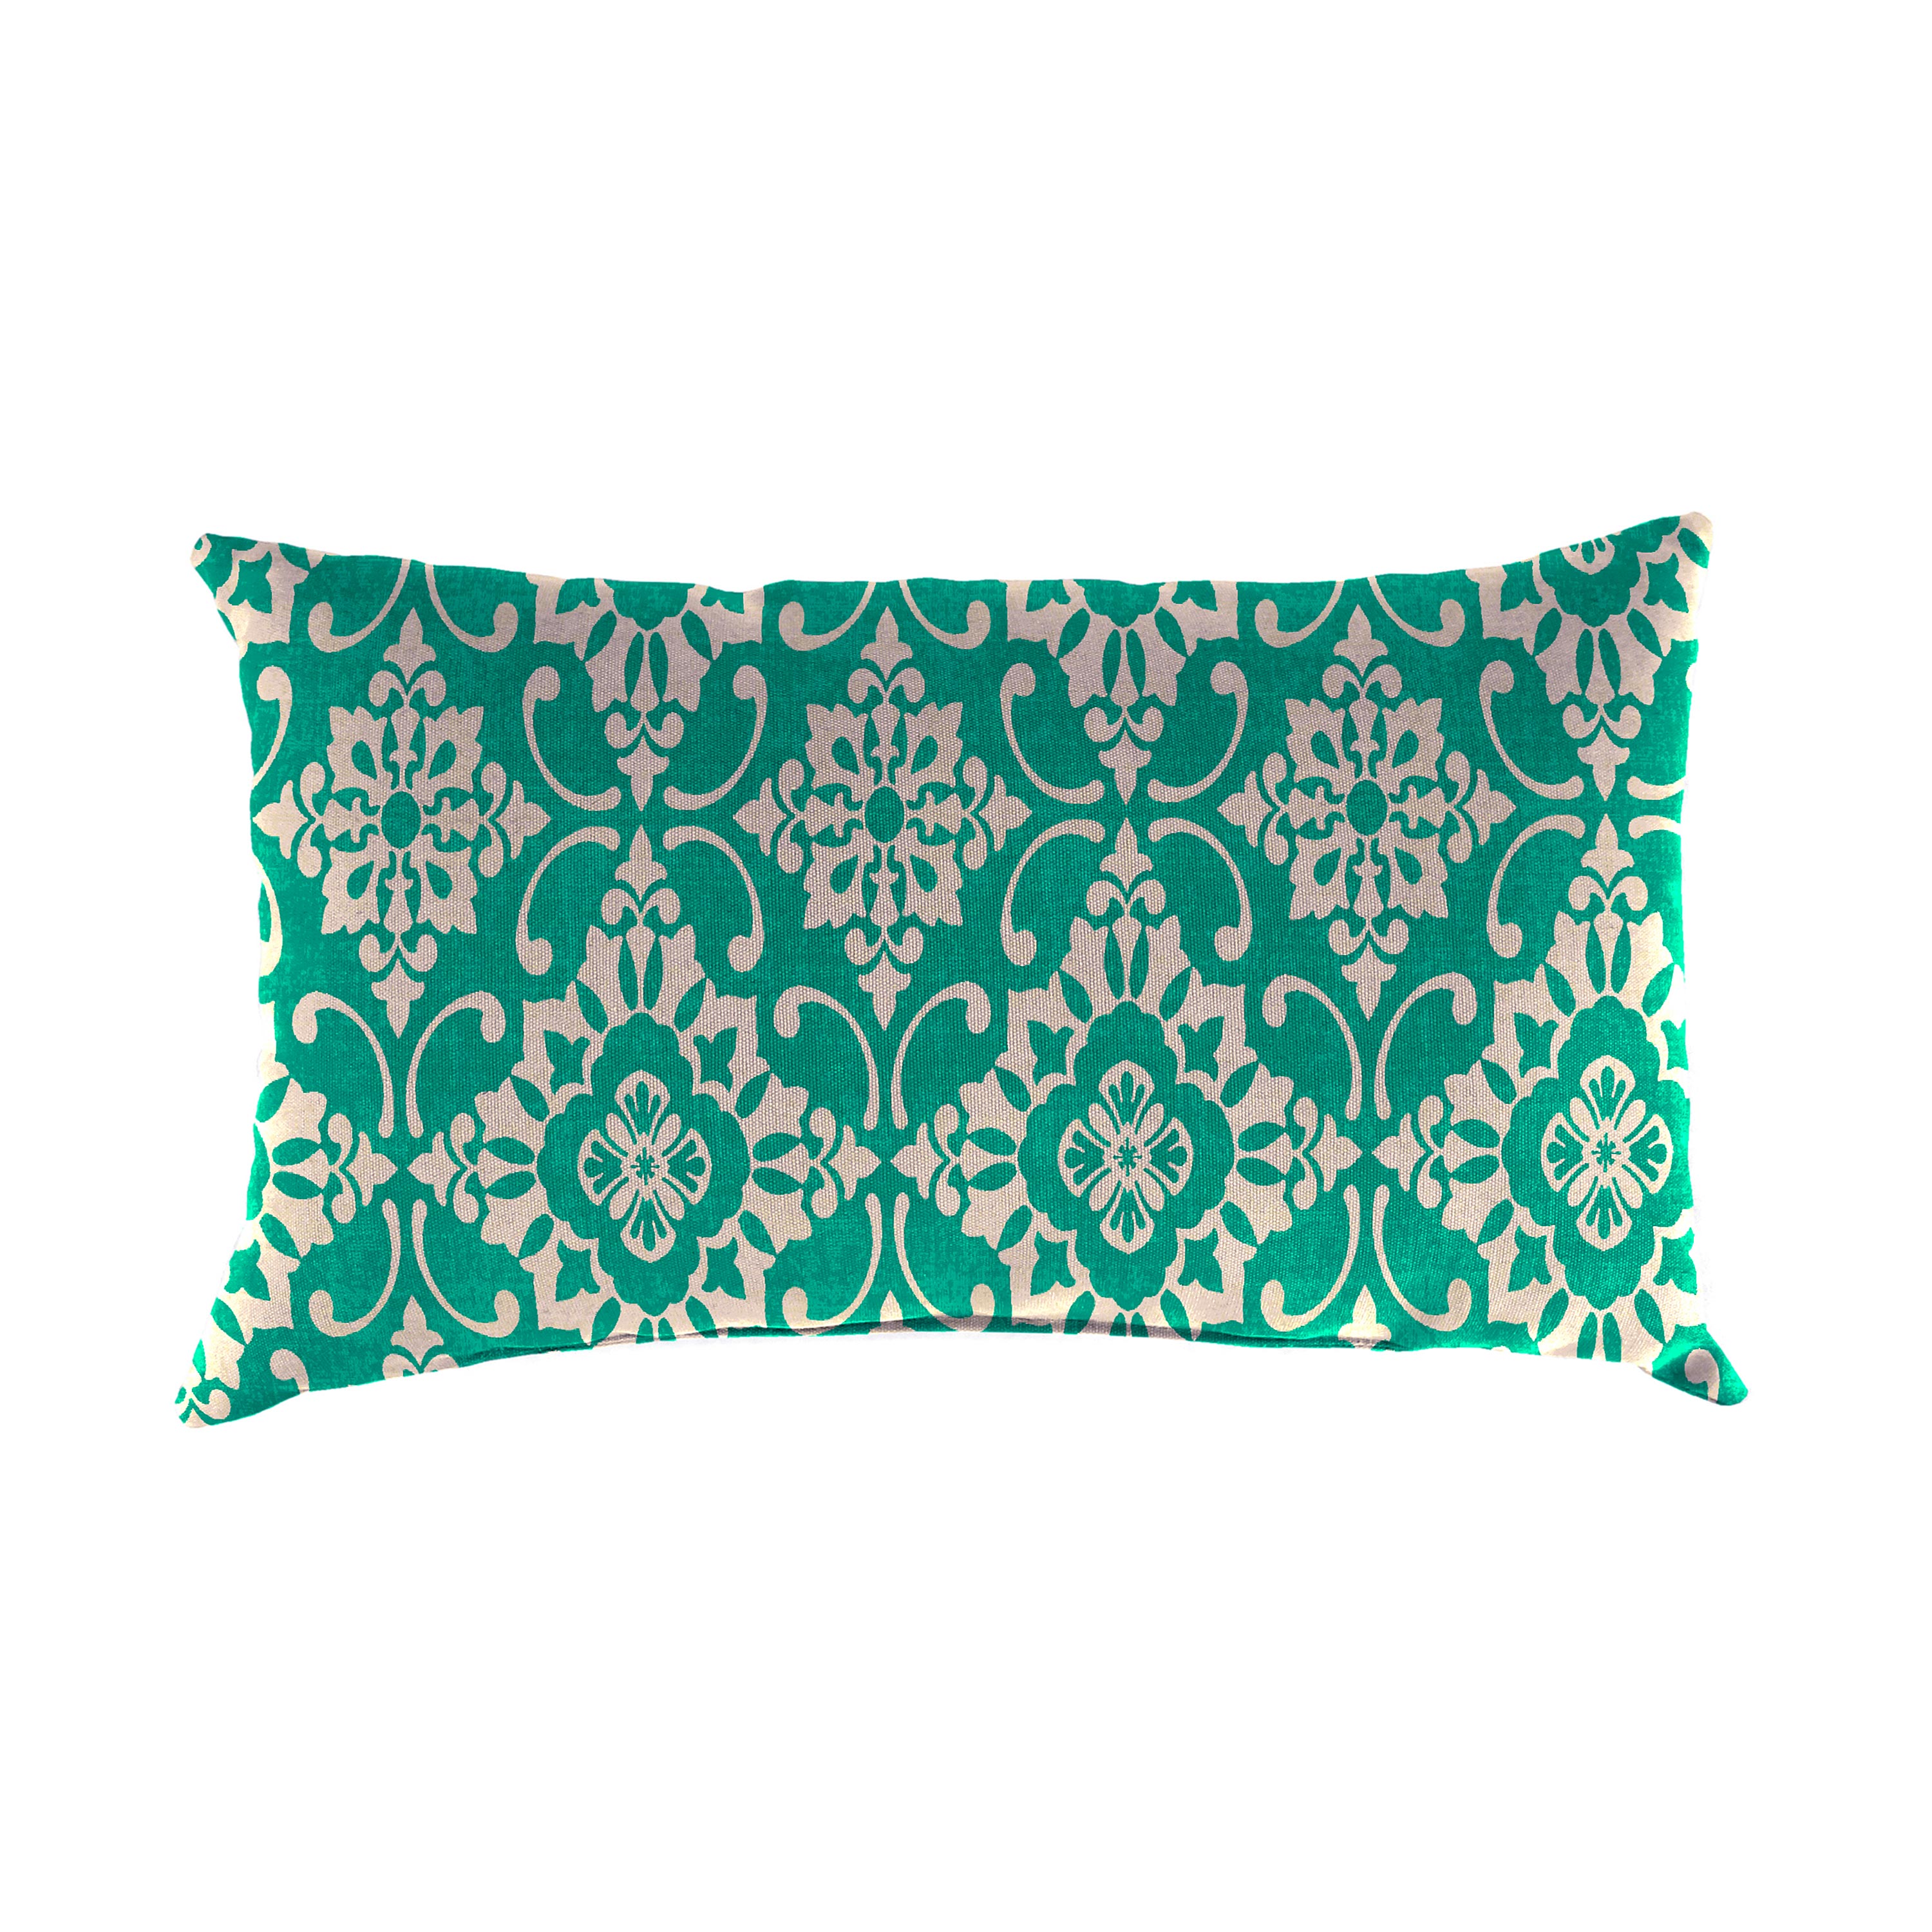 Special! Polyester Classic Lumbar Pillow, 19"x 12"x 5½" - Emerald Tile